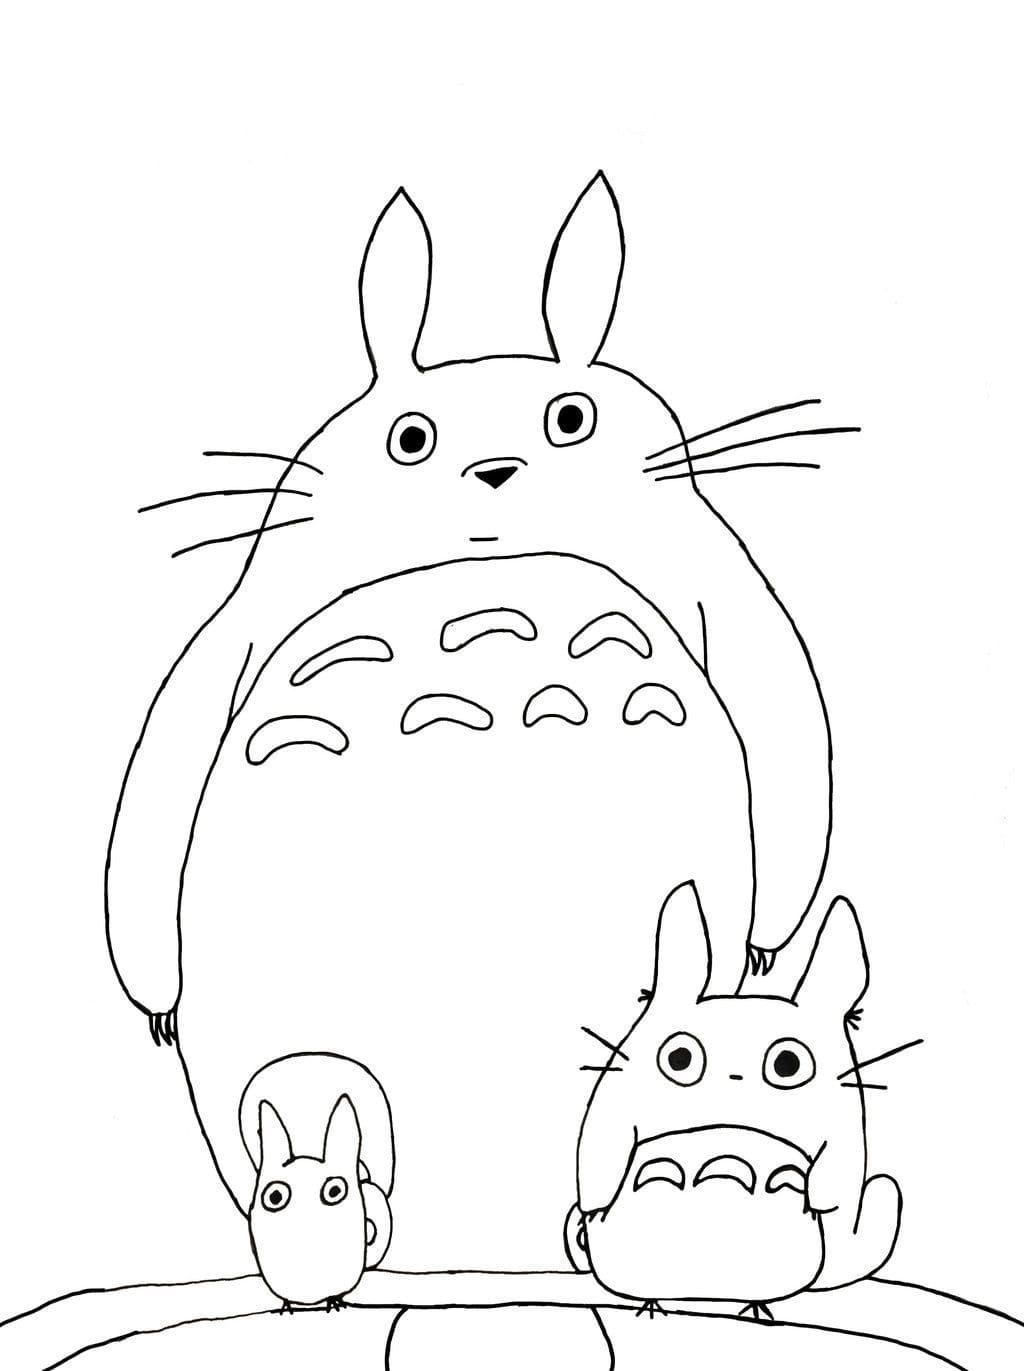 Disegno Totoro 01 de Il mio vicino Totoro da stampare e colorare